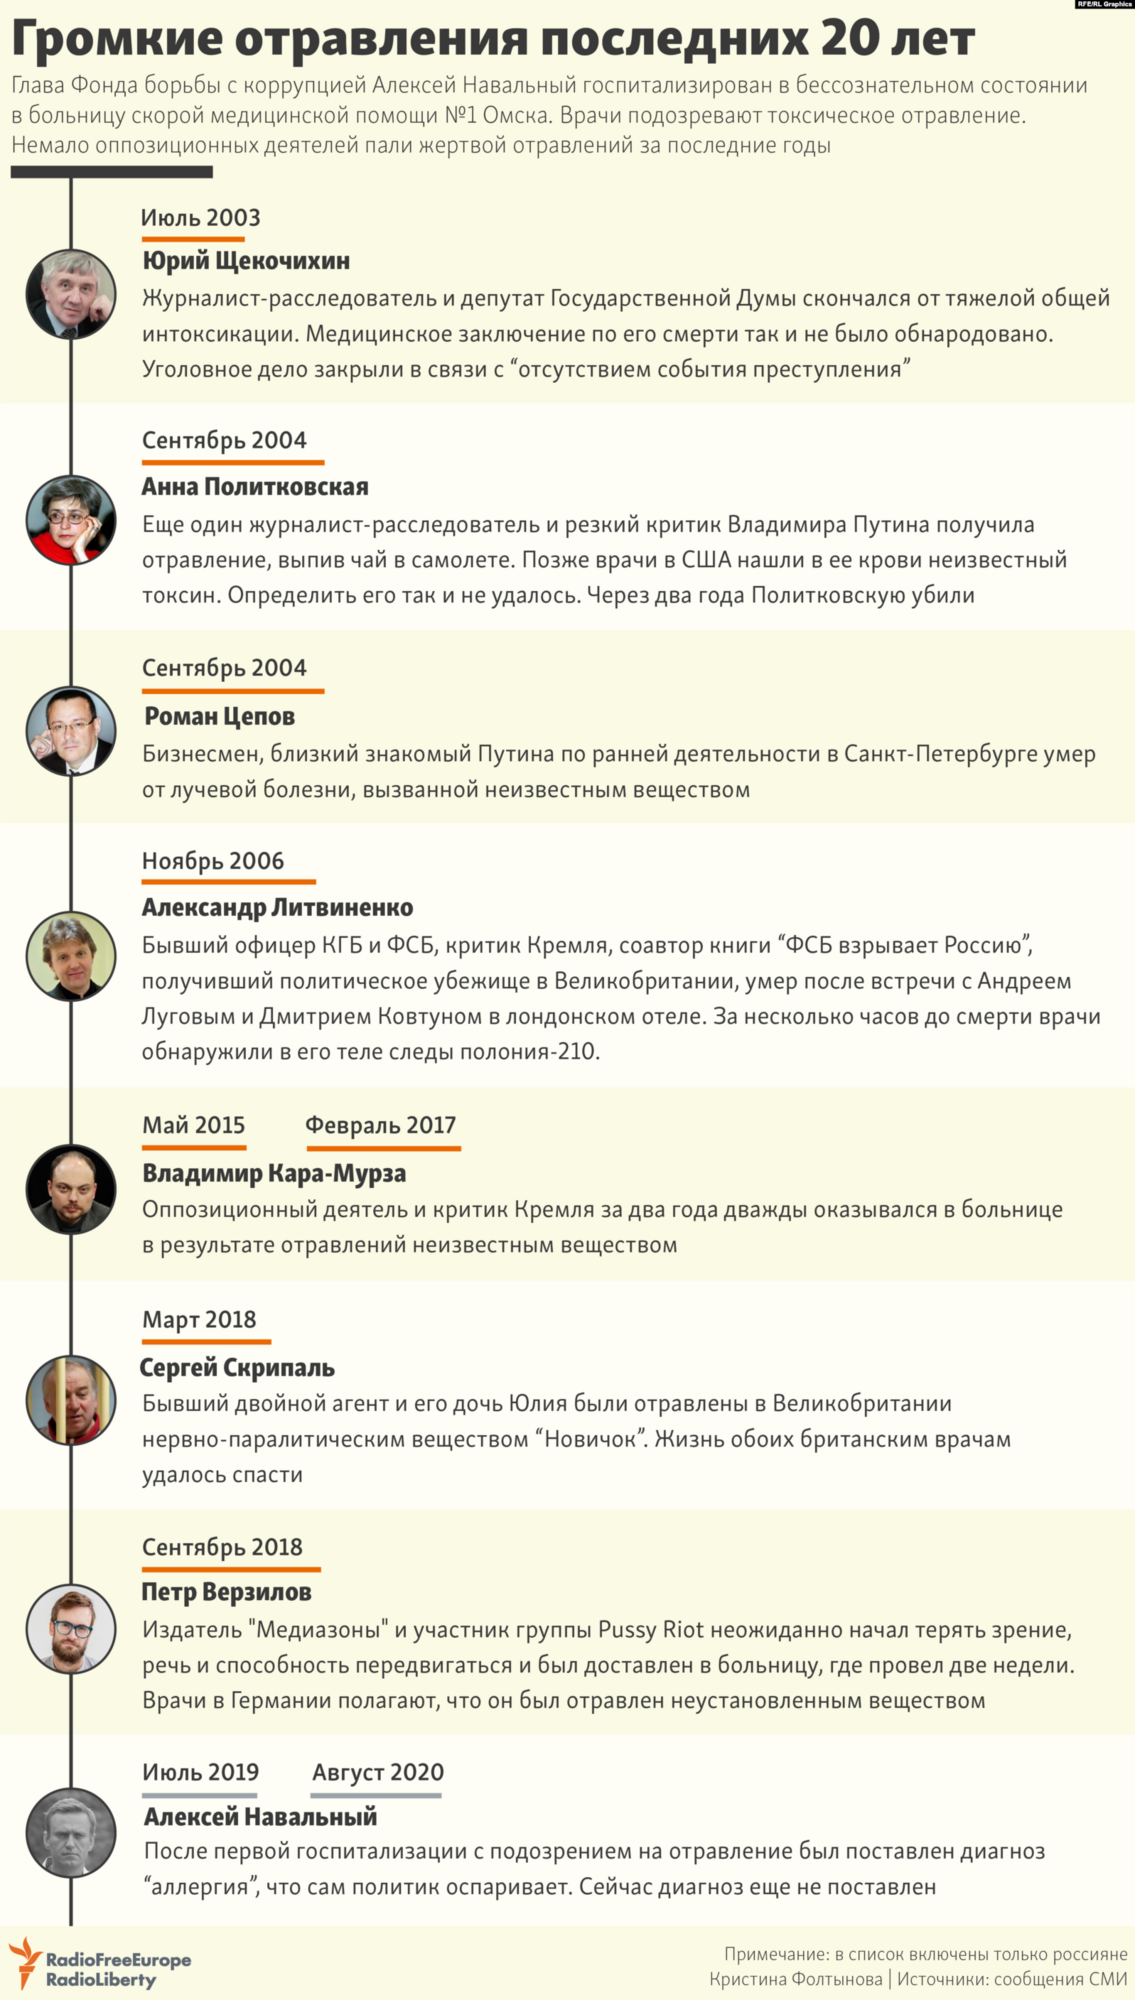 Самые громкие отравления критиков российской власти за 20 лет